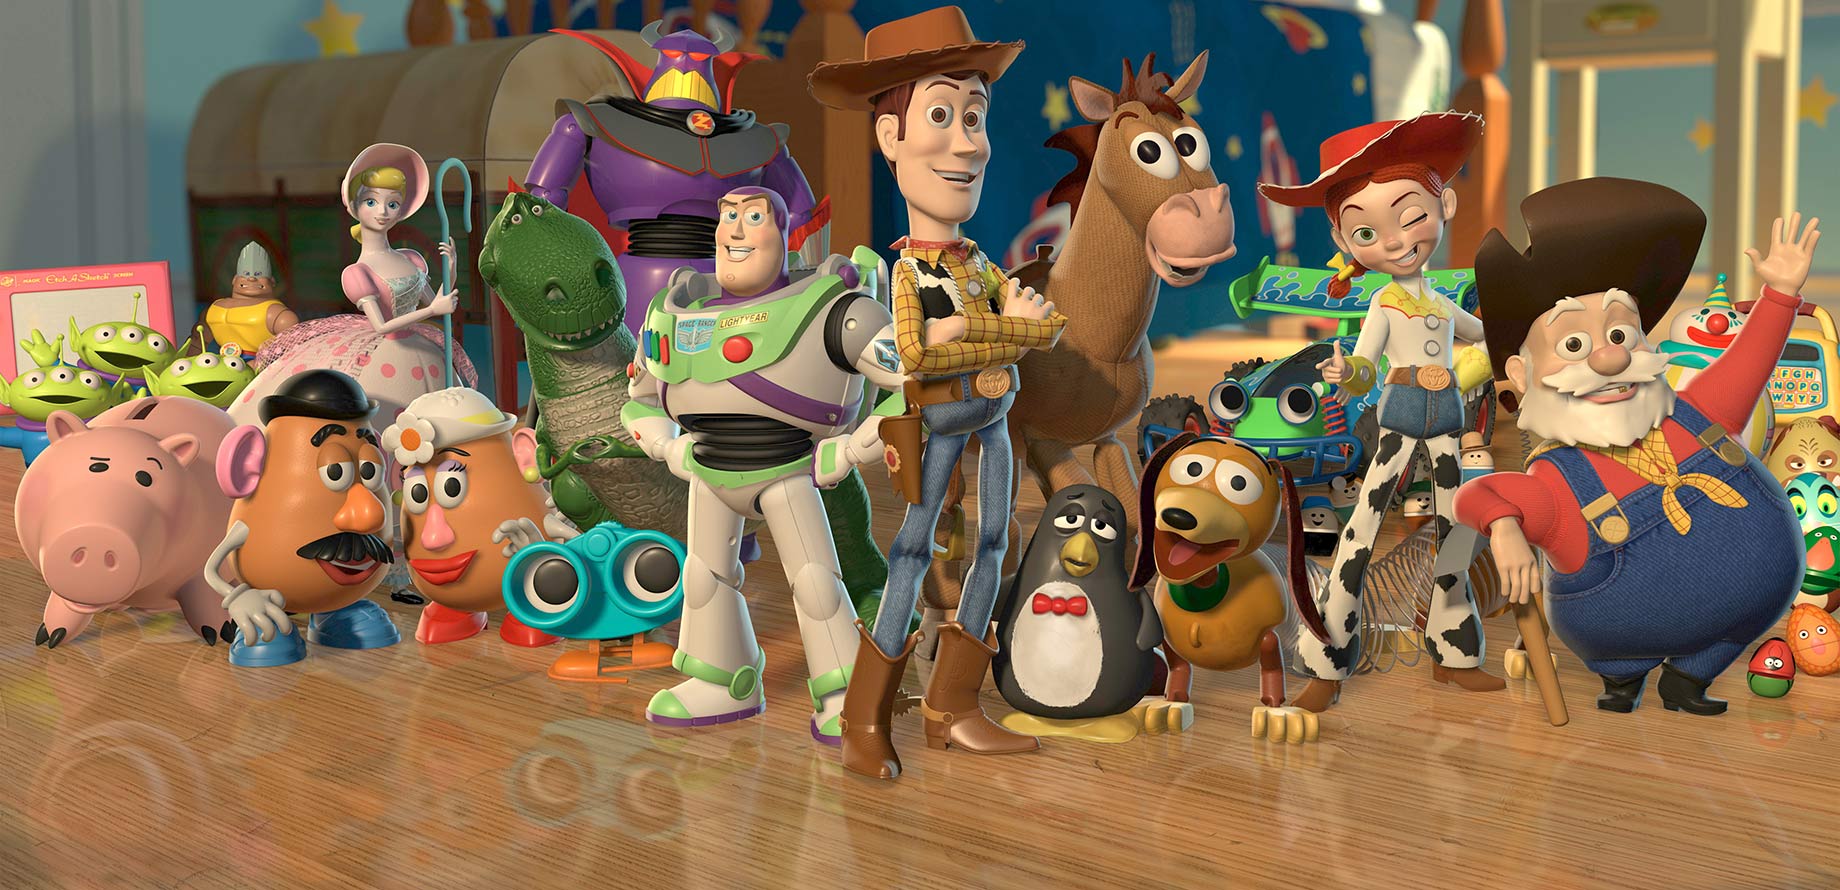 Poster com personagens da animação Toy Story: brinquedos diversos incluindo um cowboy e um patrulheiro espacial